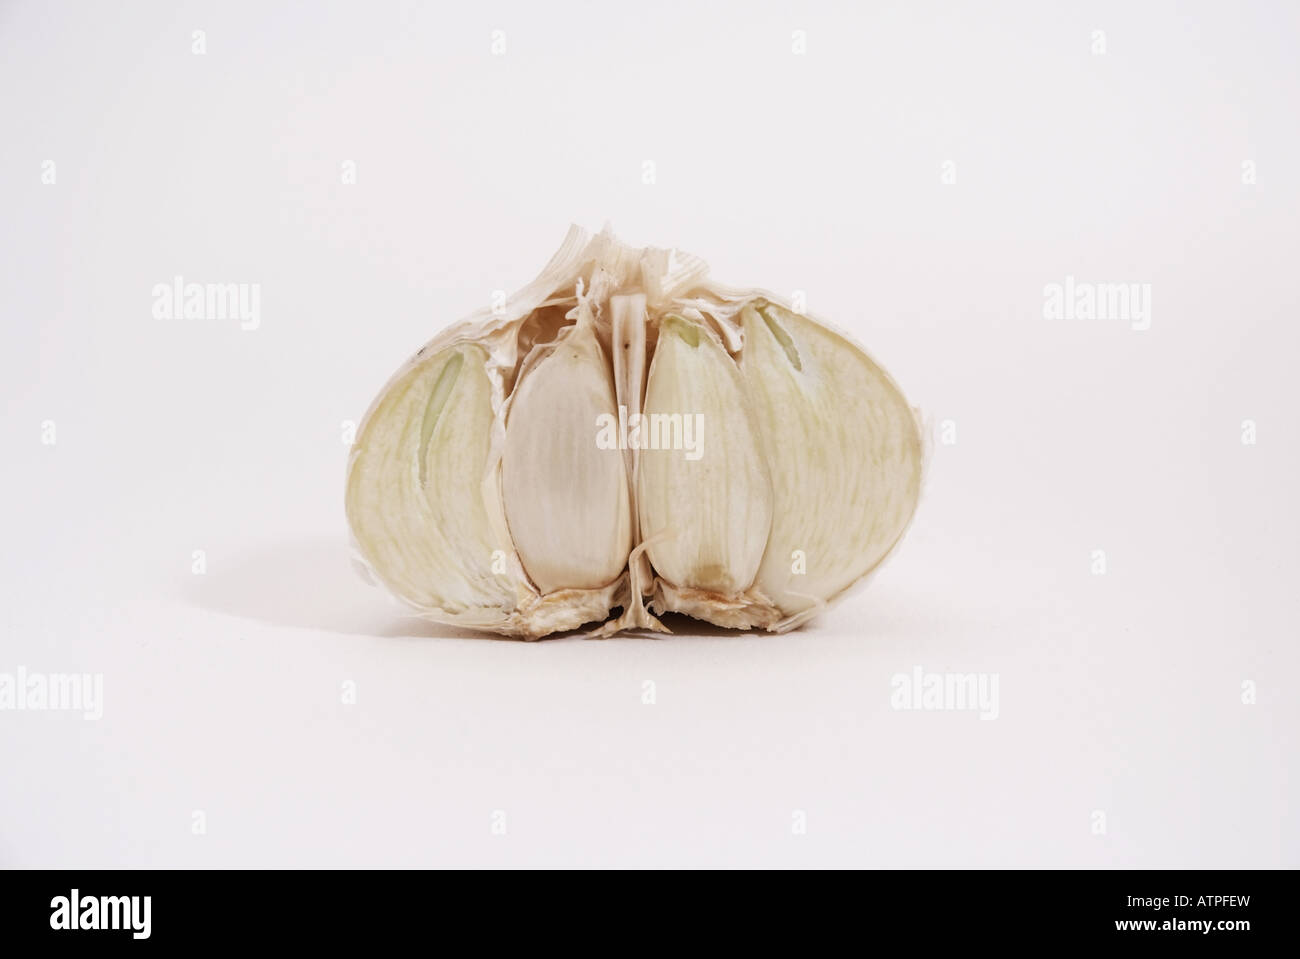 Garlic (Allium Sativum) | halbierte Knoblauch Knolle Stock Photo